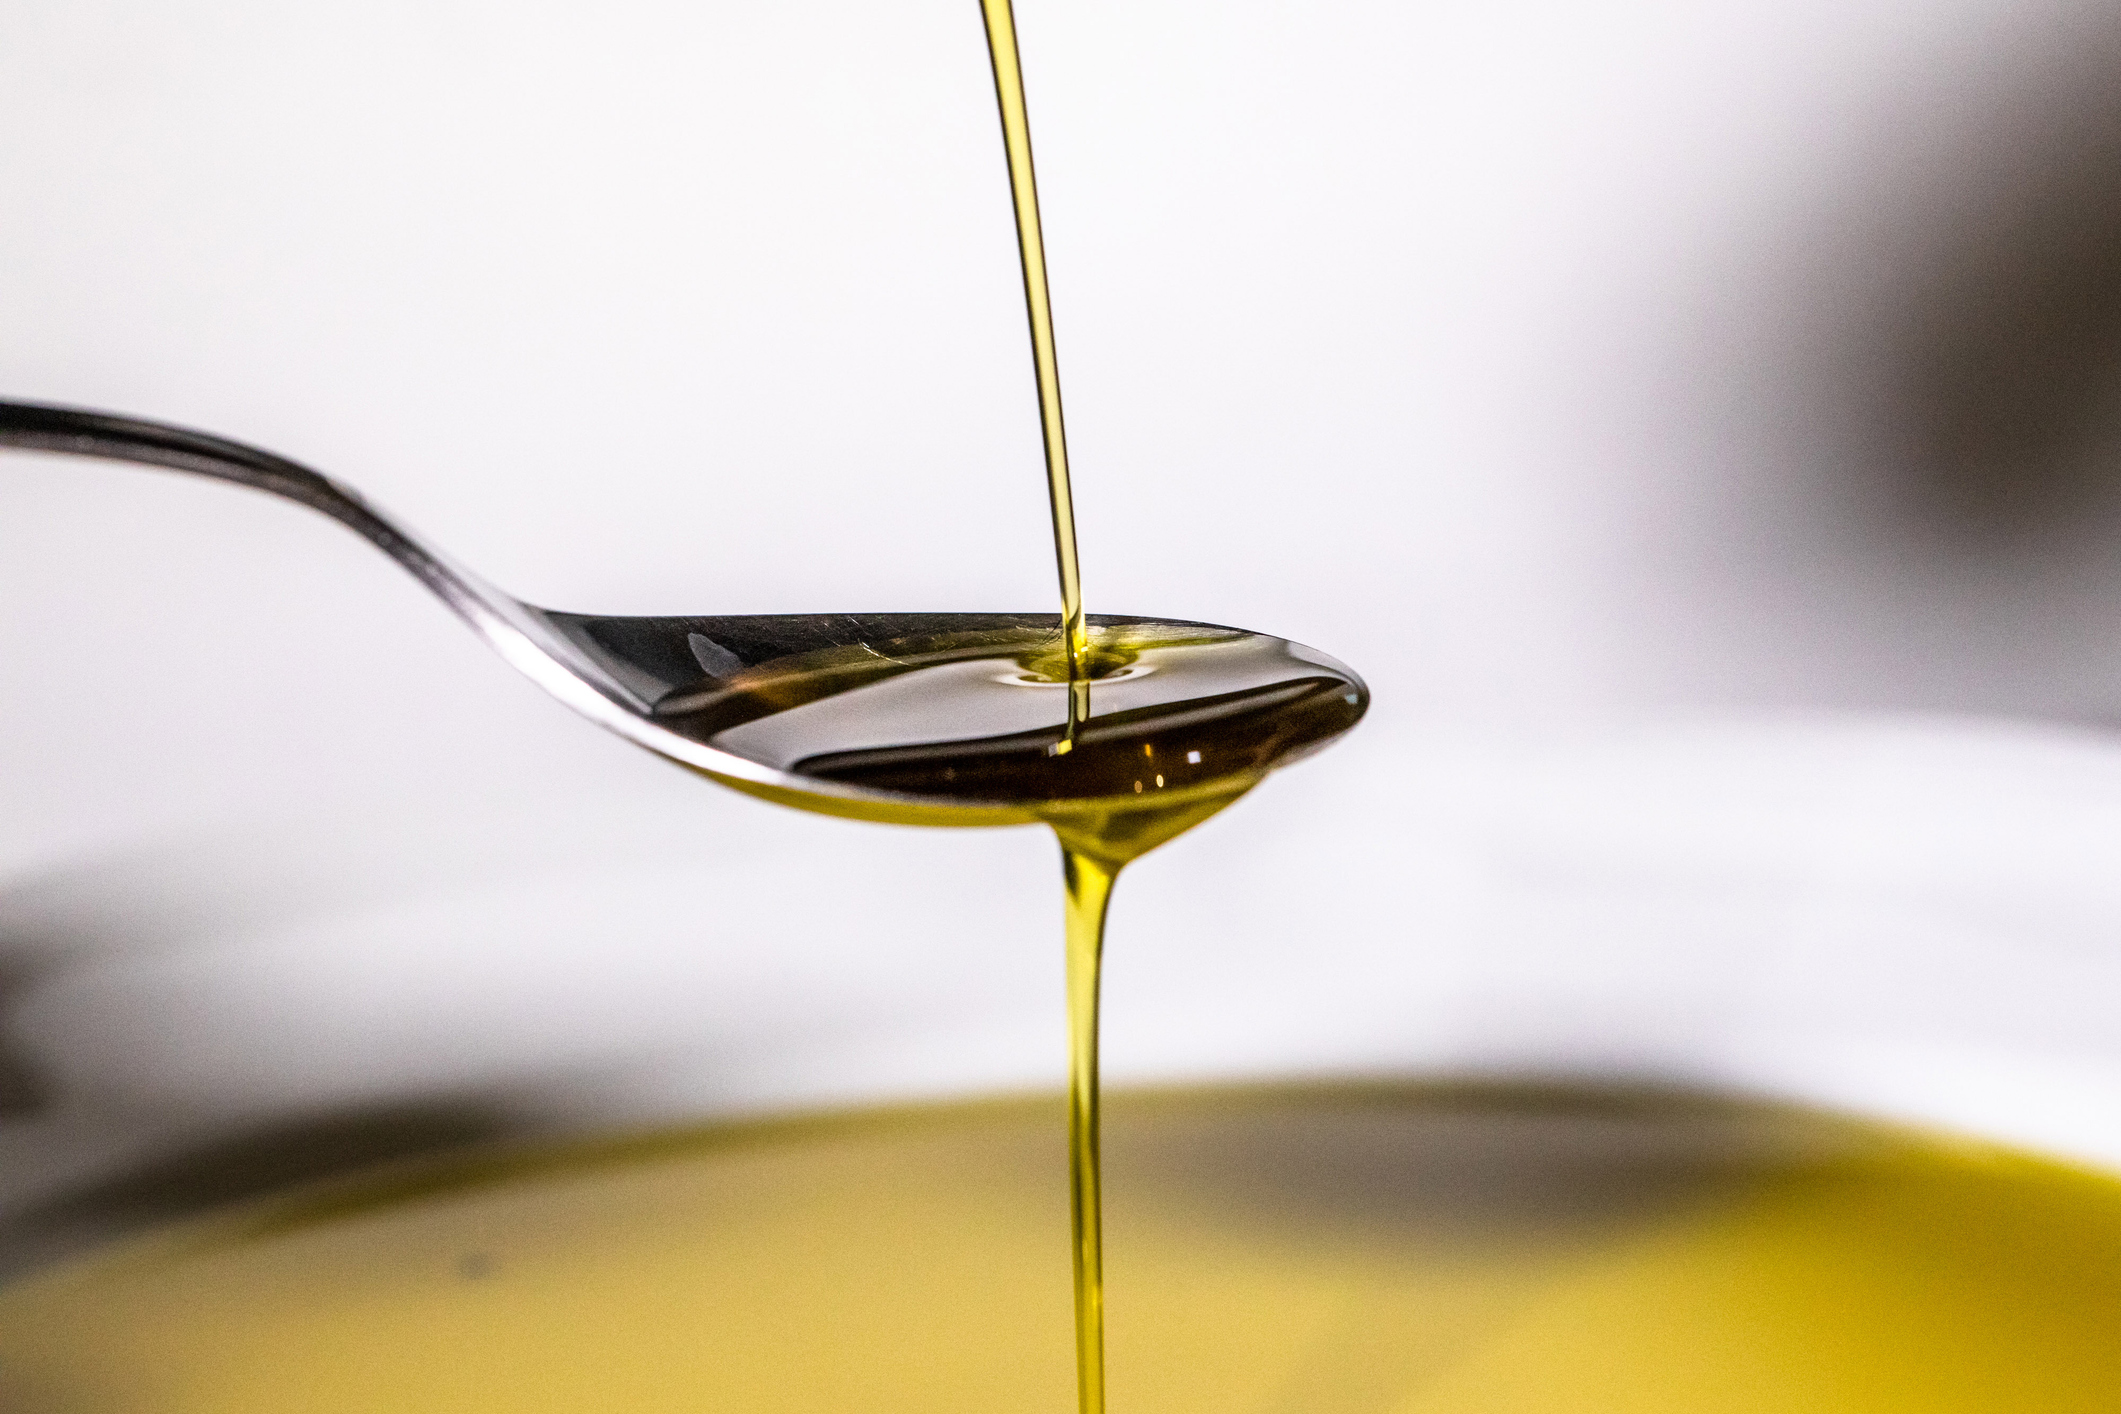 uno de los aceites más consumidos en españa se convierte en veneno cuando se calienta